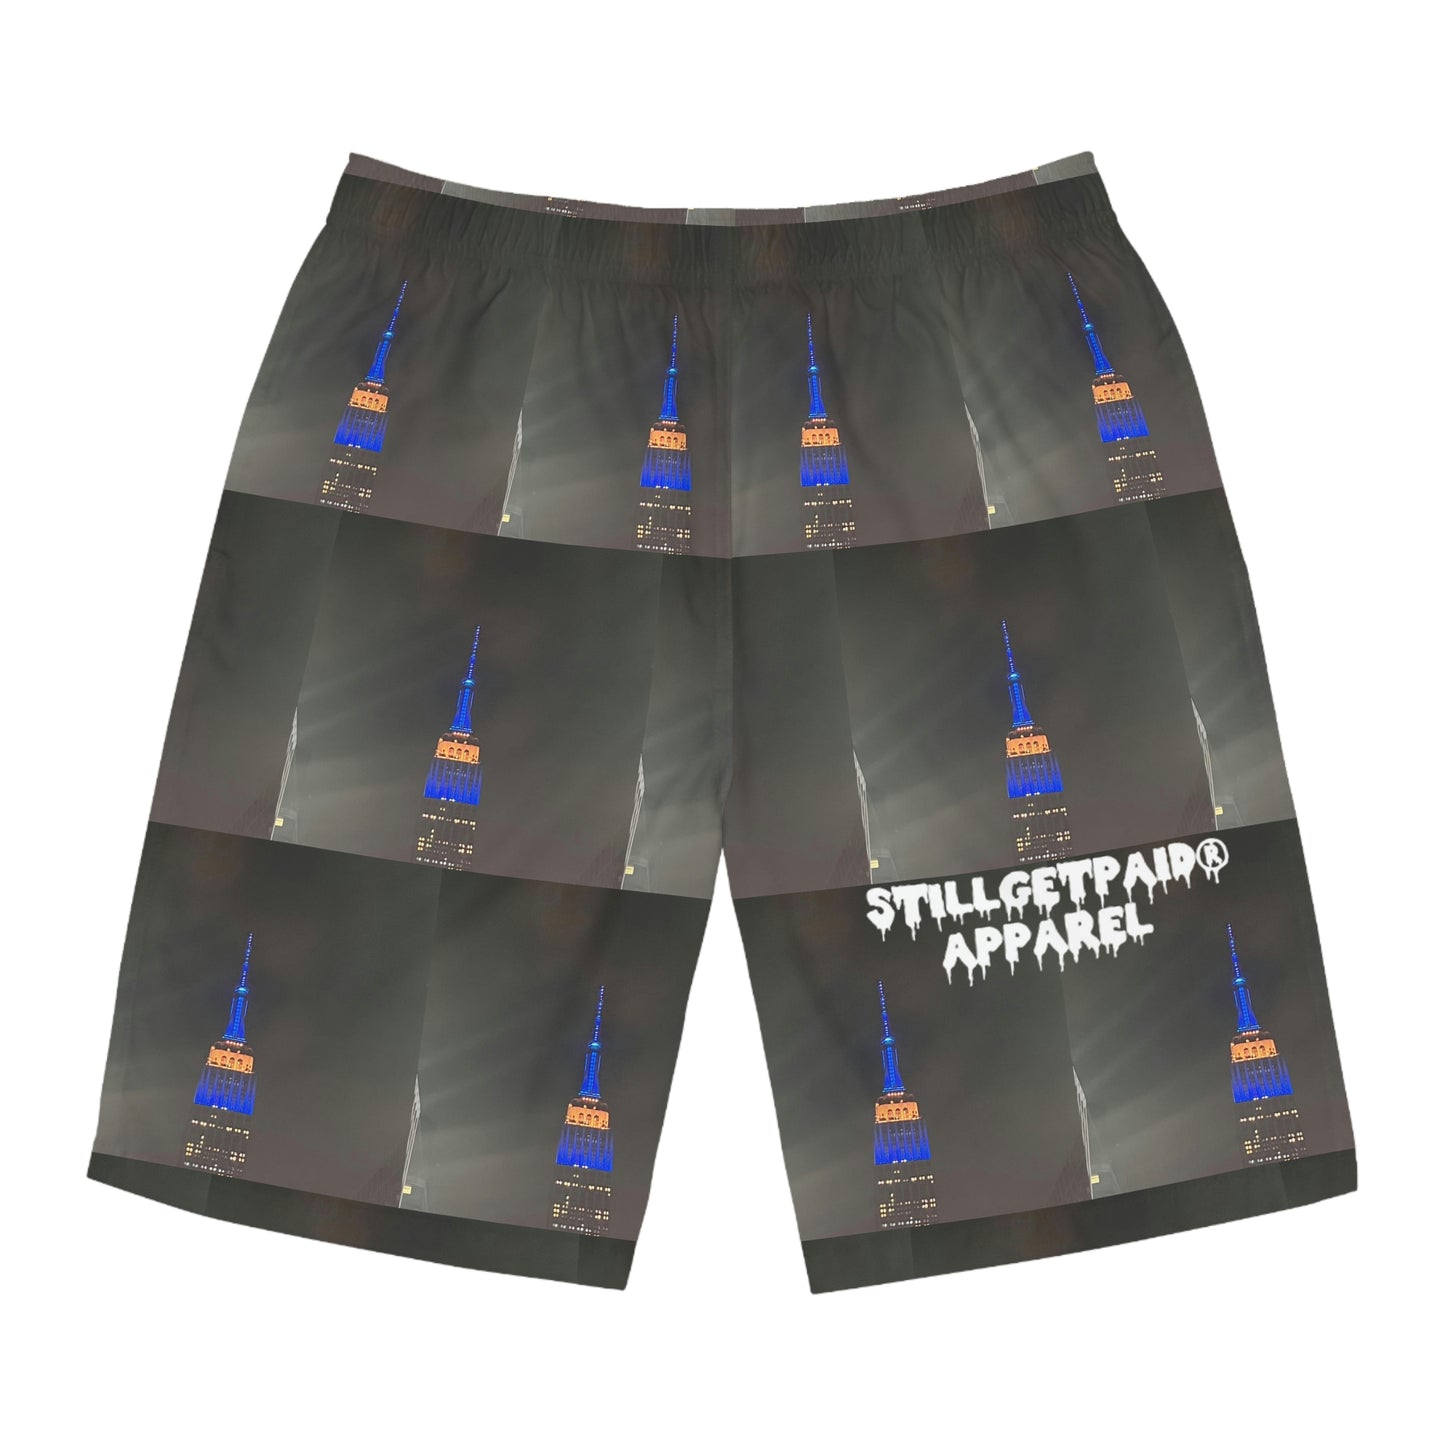 STILLGETPAID® APPAREL Men's Board Shorts (AOP)